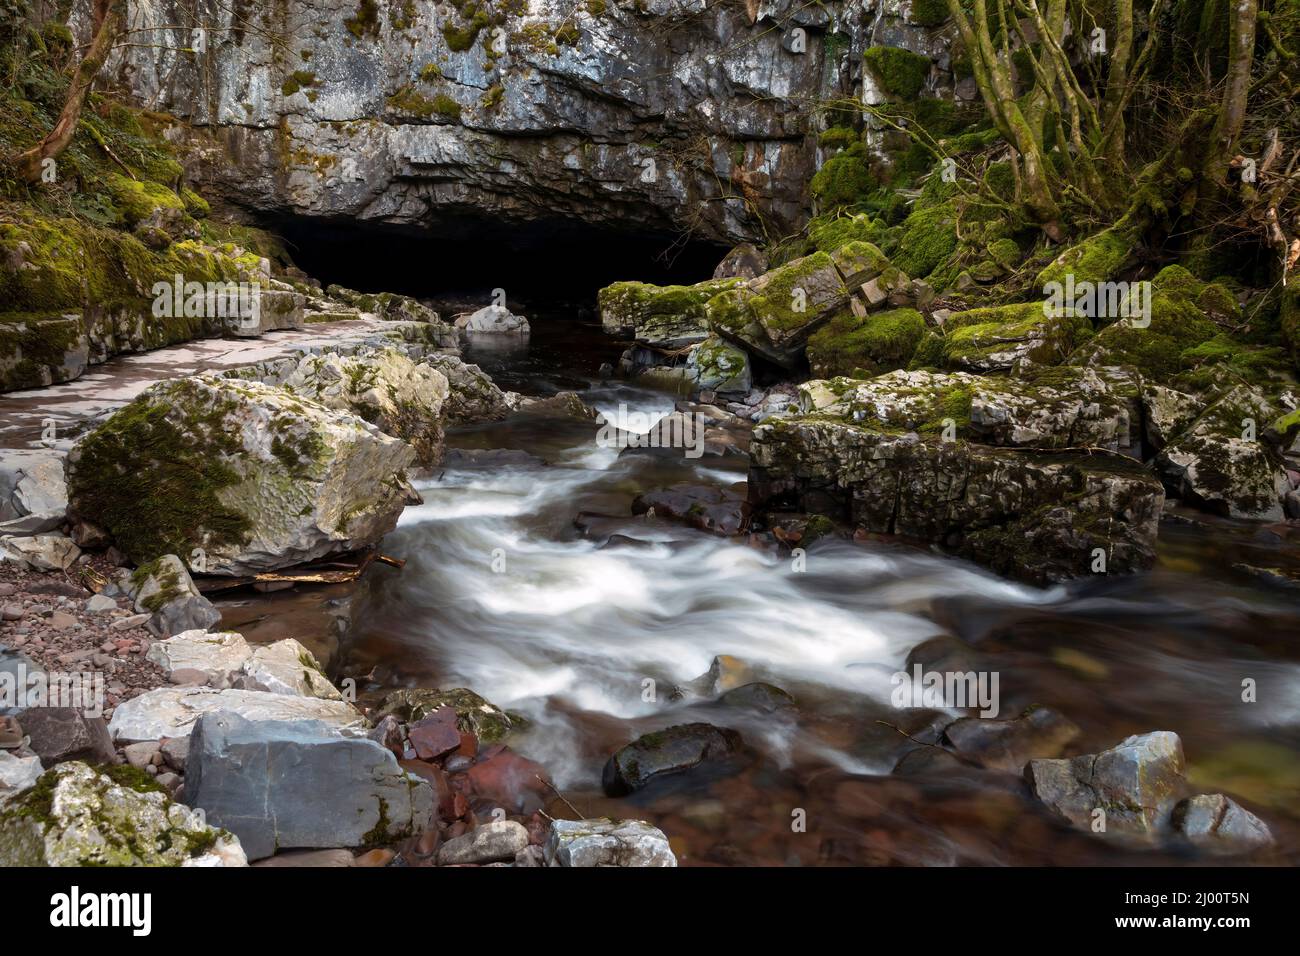 Porth Ogyr la plus grande entrée de grotte du pays de Galles, située dans les Brecon Beacons près du village d'Ystradfellte, au sud du pays de Galles, au Royaume-Uni Banque D'Images